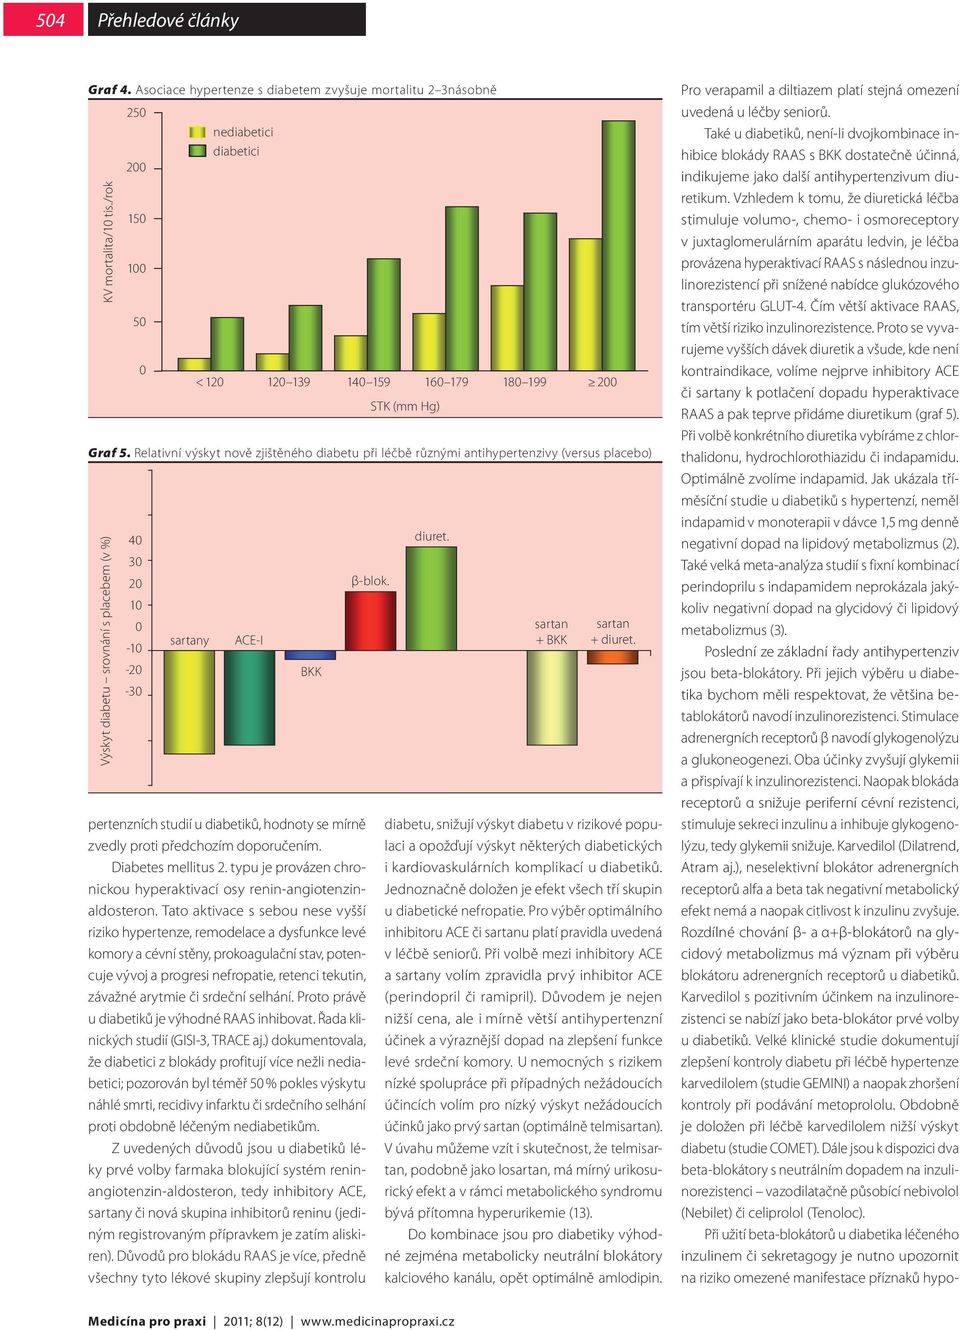 Relativní výskyt nově zjištěného diabetu při léčbě různými antihypertenzivy (versus placebo) Výskyt diabetu srovnání s placebem (v %) 40 30 20 10 0-10 -20-30 sartany ACE-I BKK pertenzních studií u